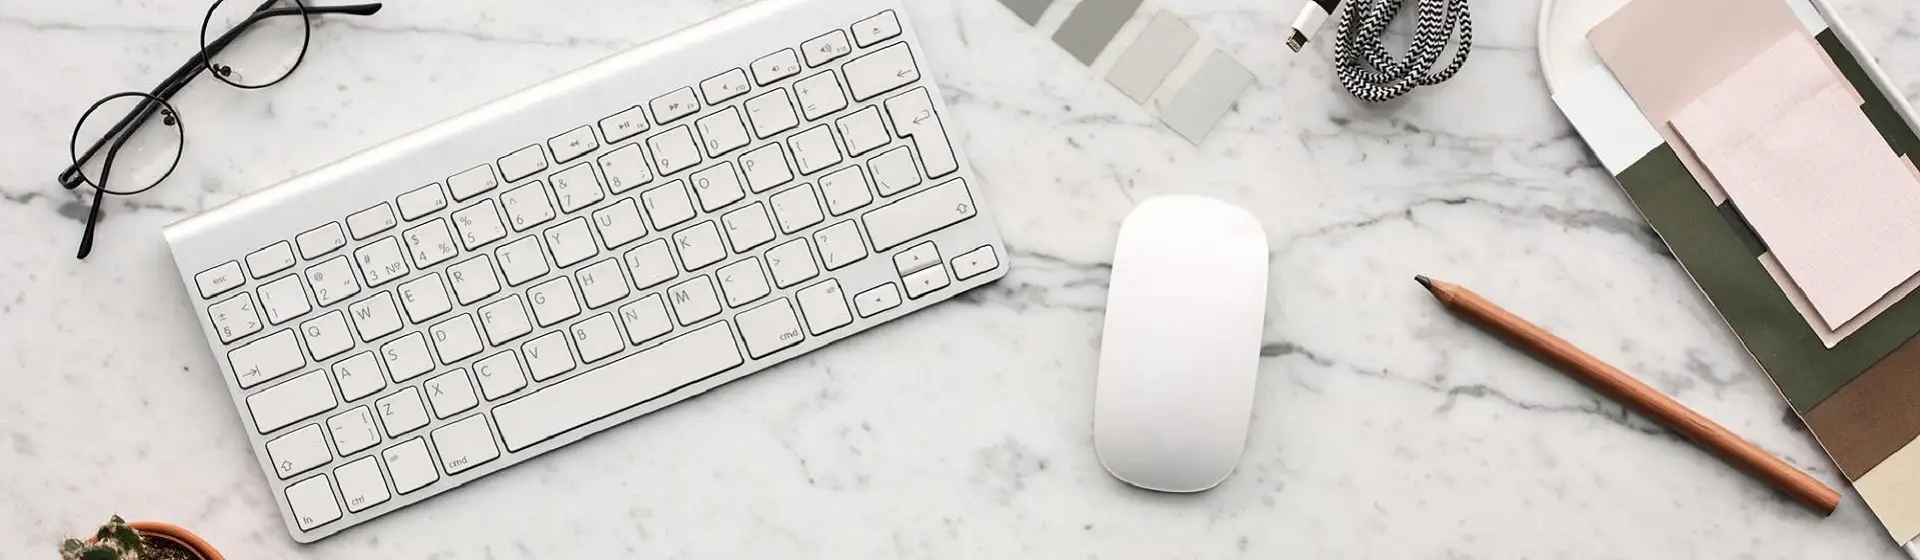 Melhor kit teclado e mouse sem fio: 10 boas opções para o dia a dia